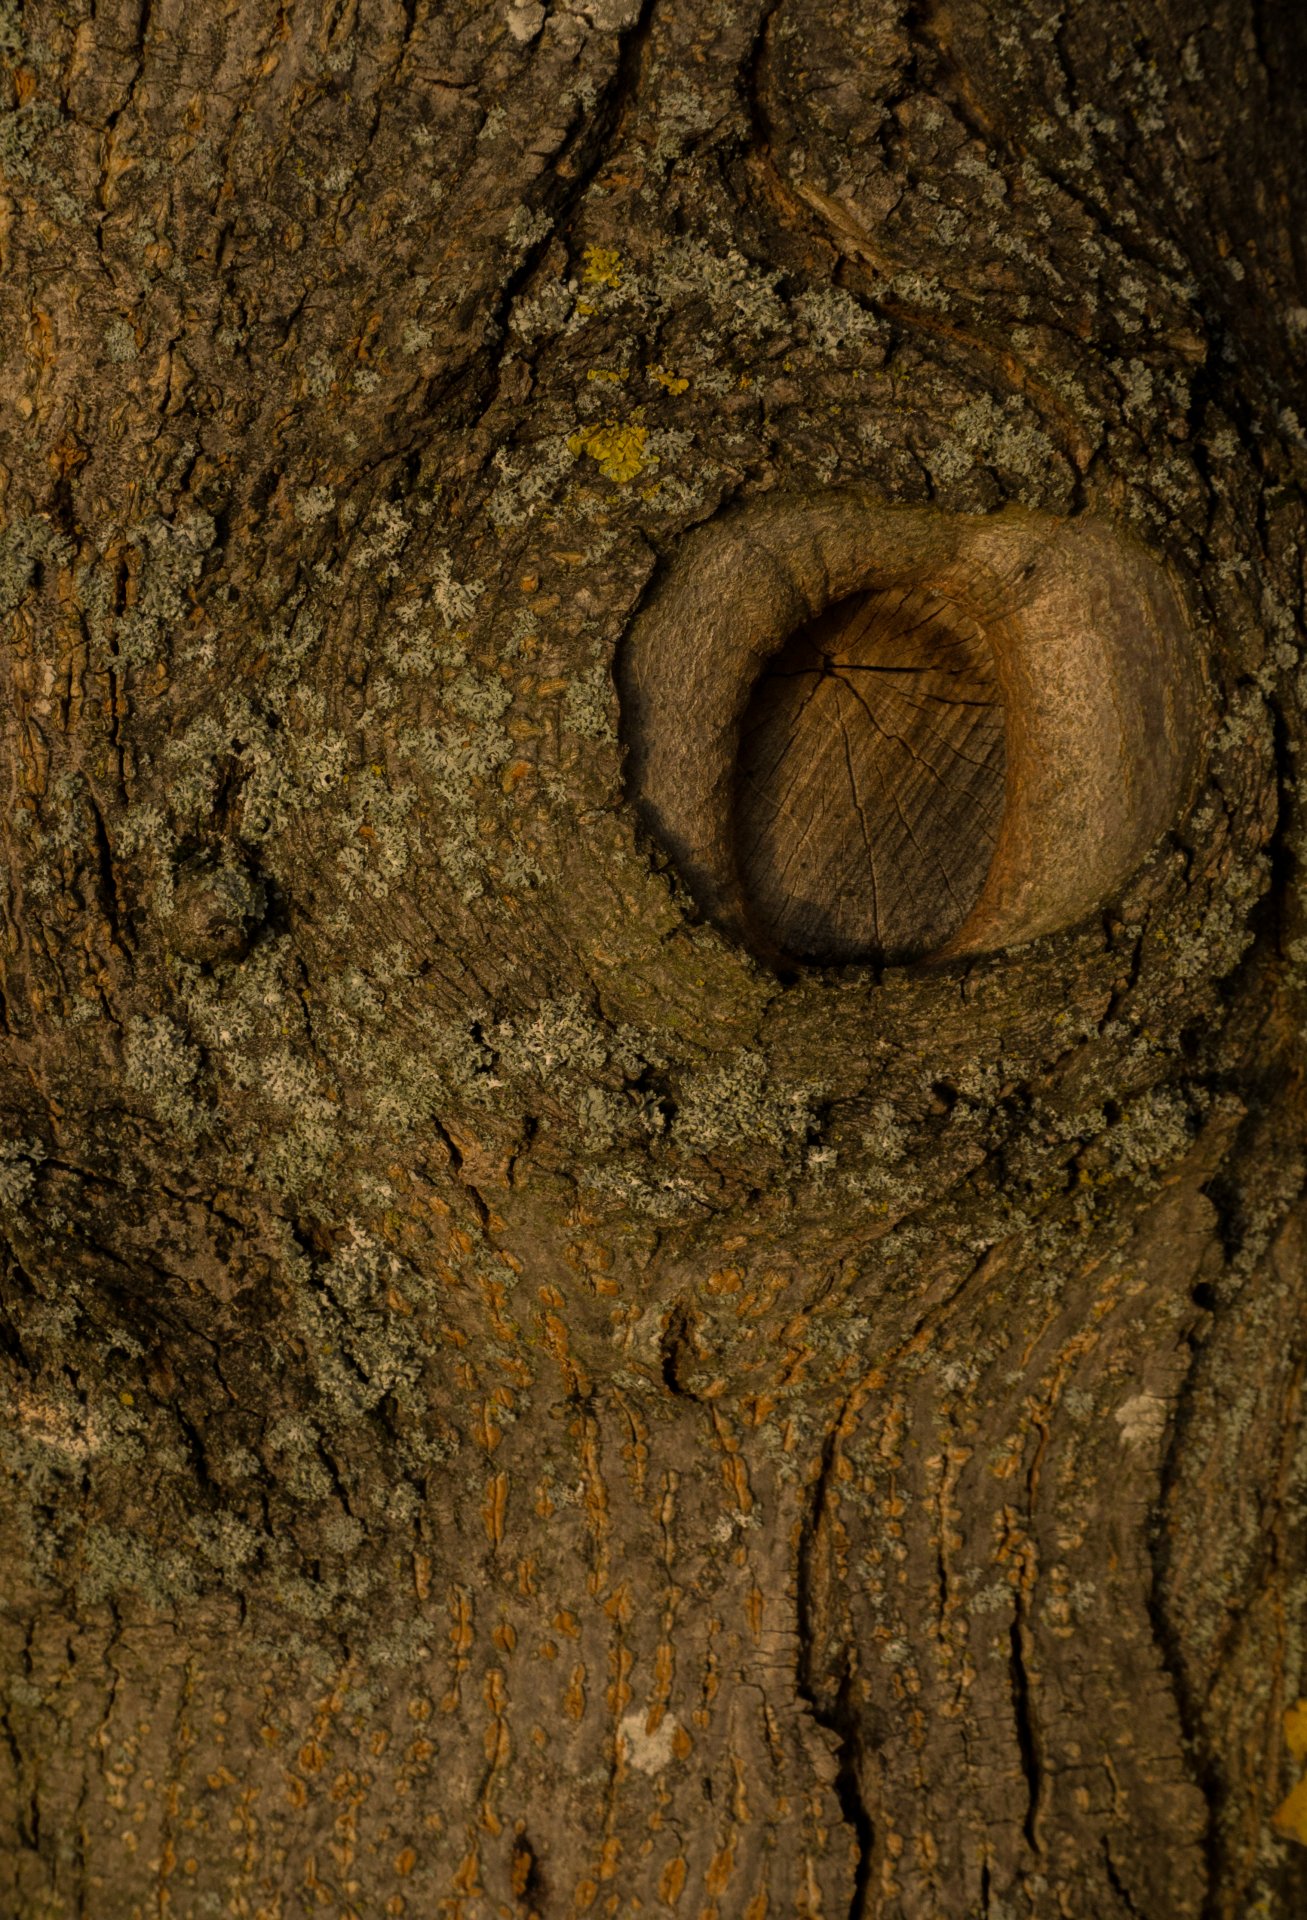 Kmen stromu - Fotografování pro začátečníky